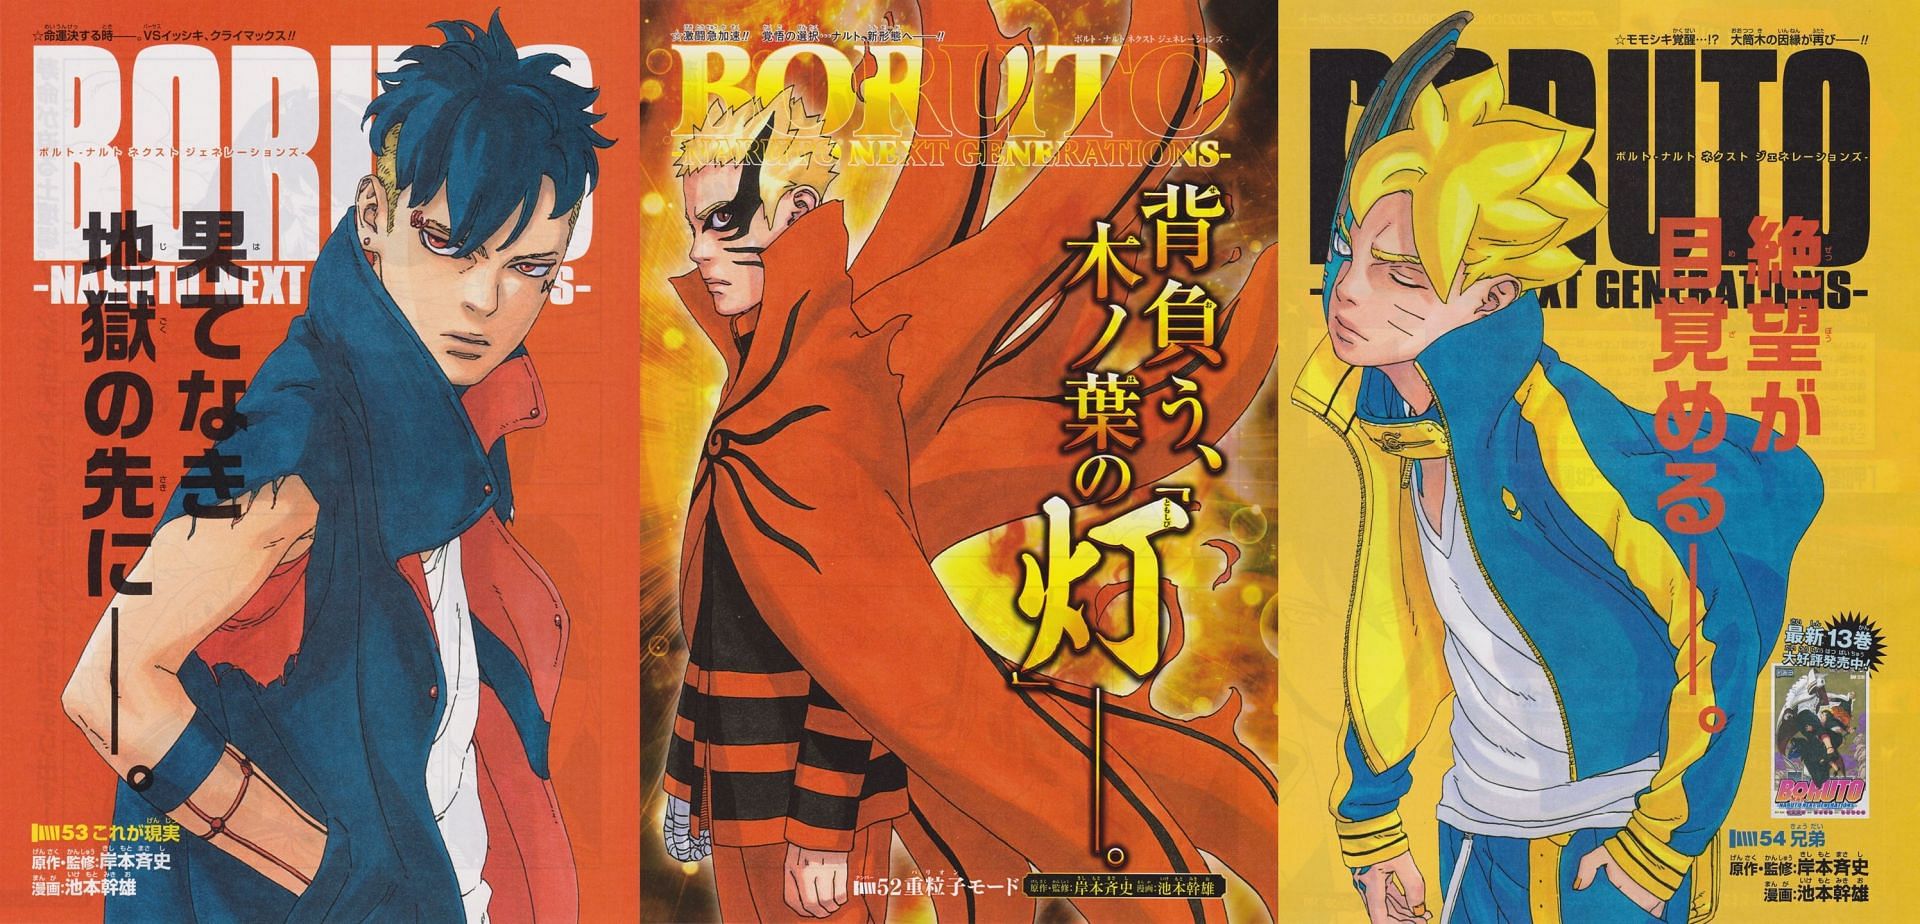 Boruto manga covers (Image via Shueisha)